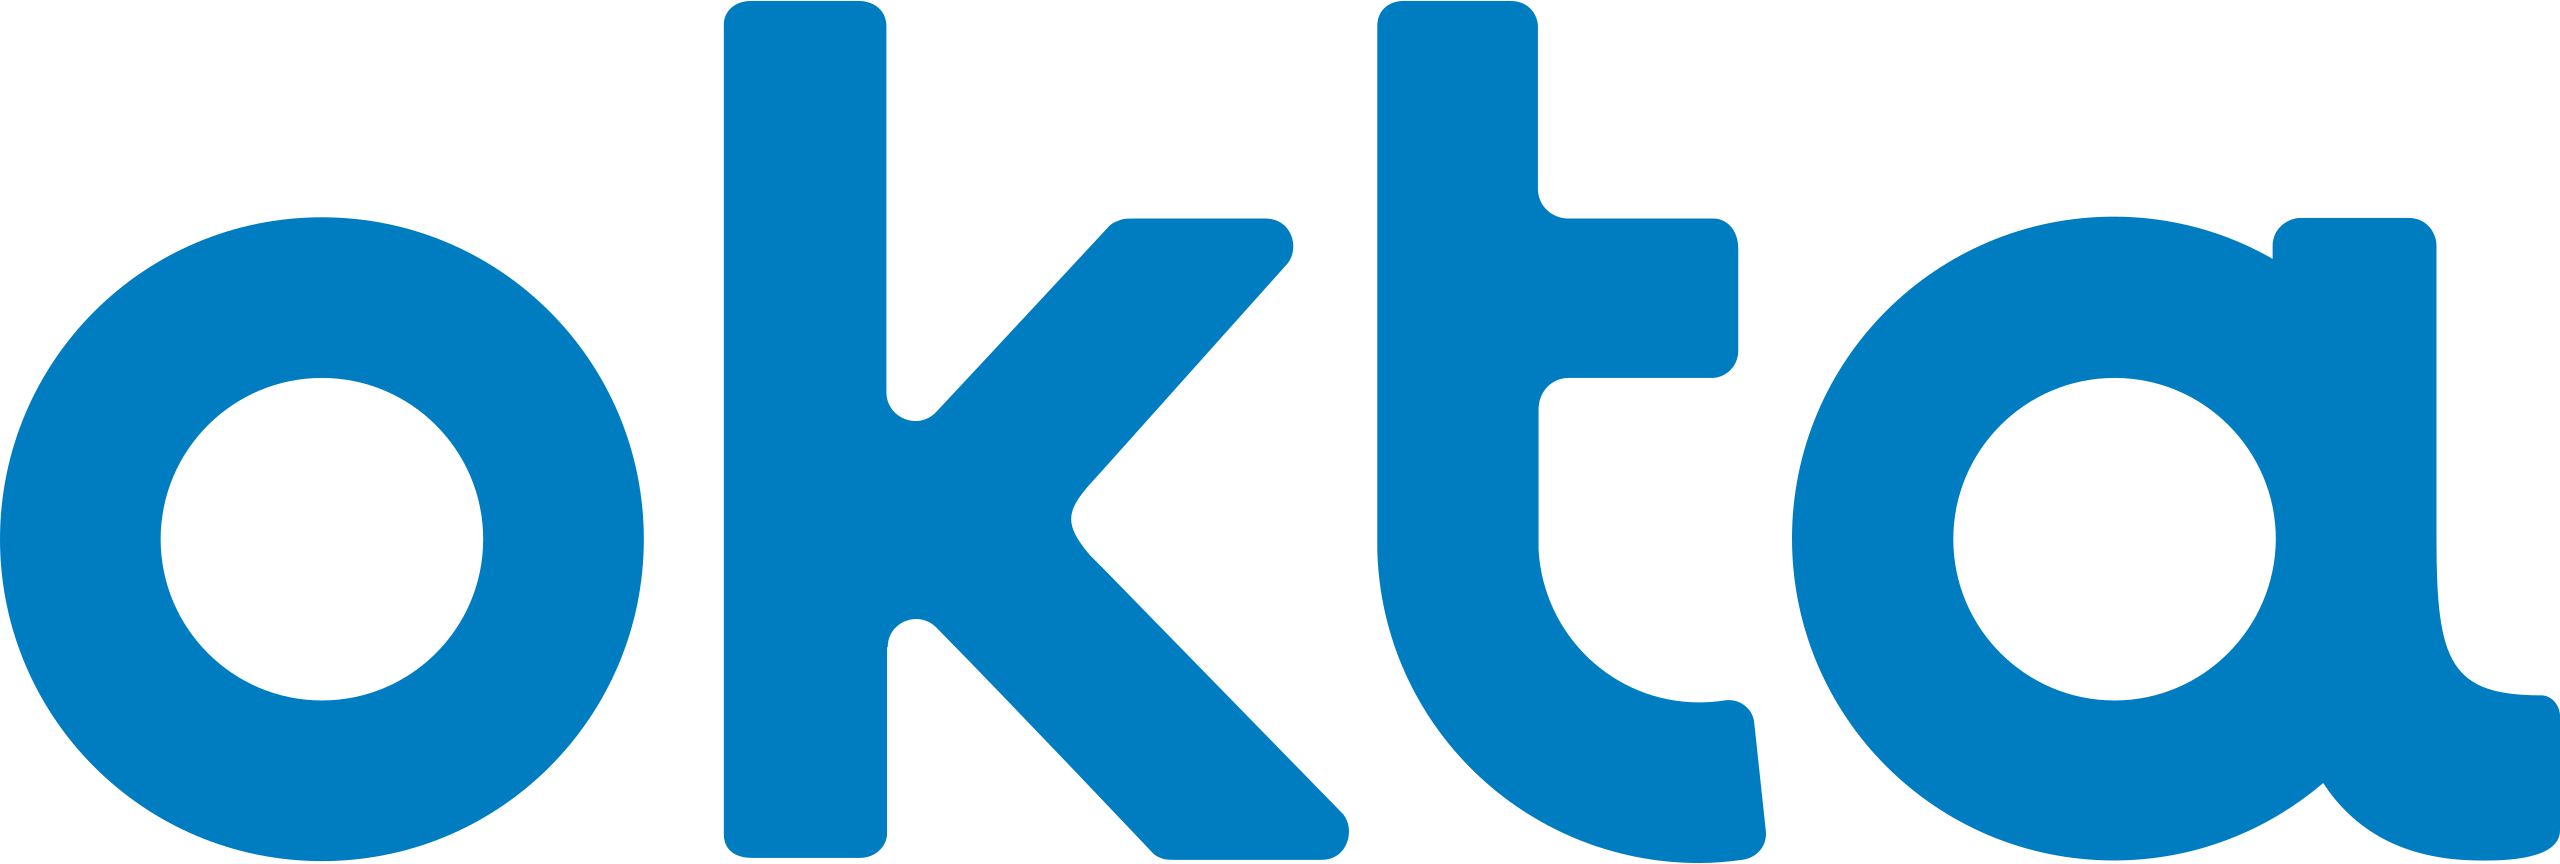 2560px-Okta_logo